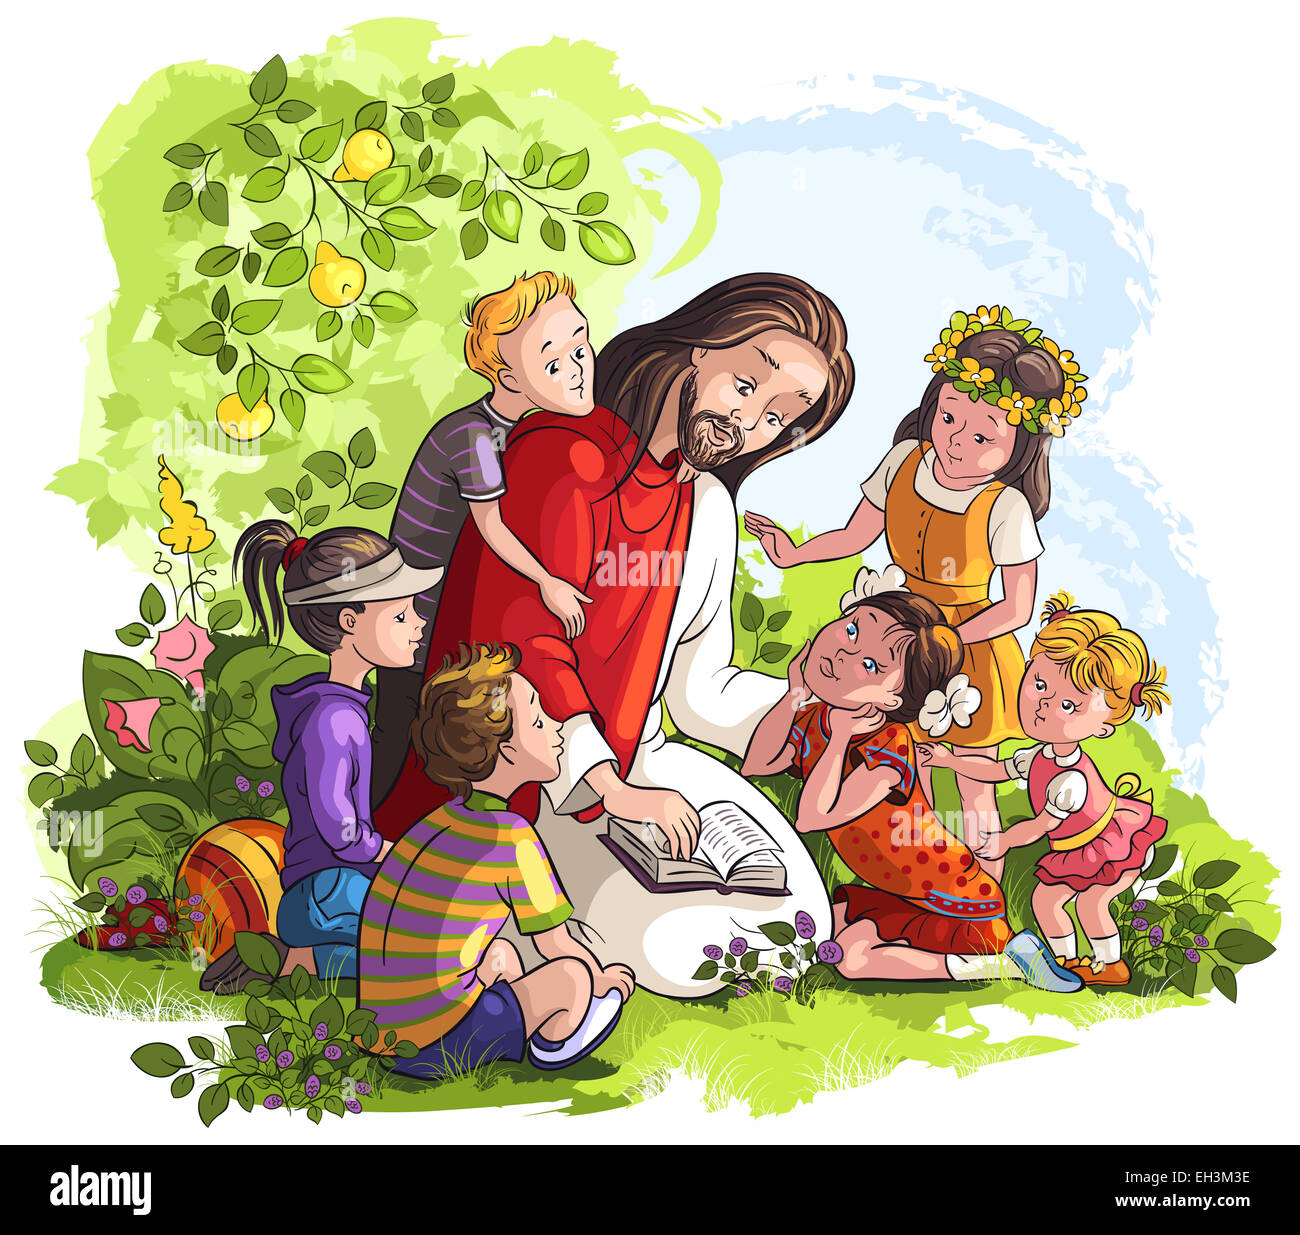 Jésus lire la Bible avec les enfants. Cartoon illustration couleur chrétienne des événements dans la vie de Jésus Banque D'Images